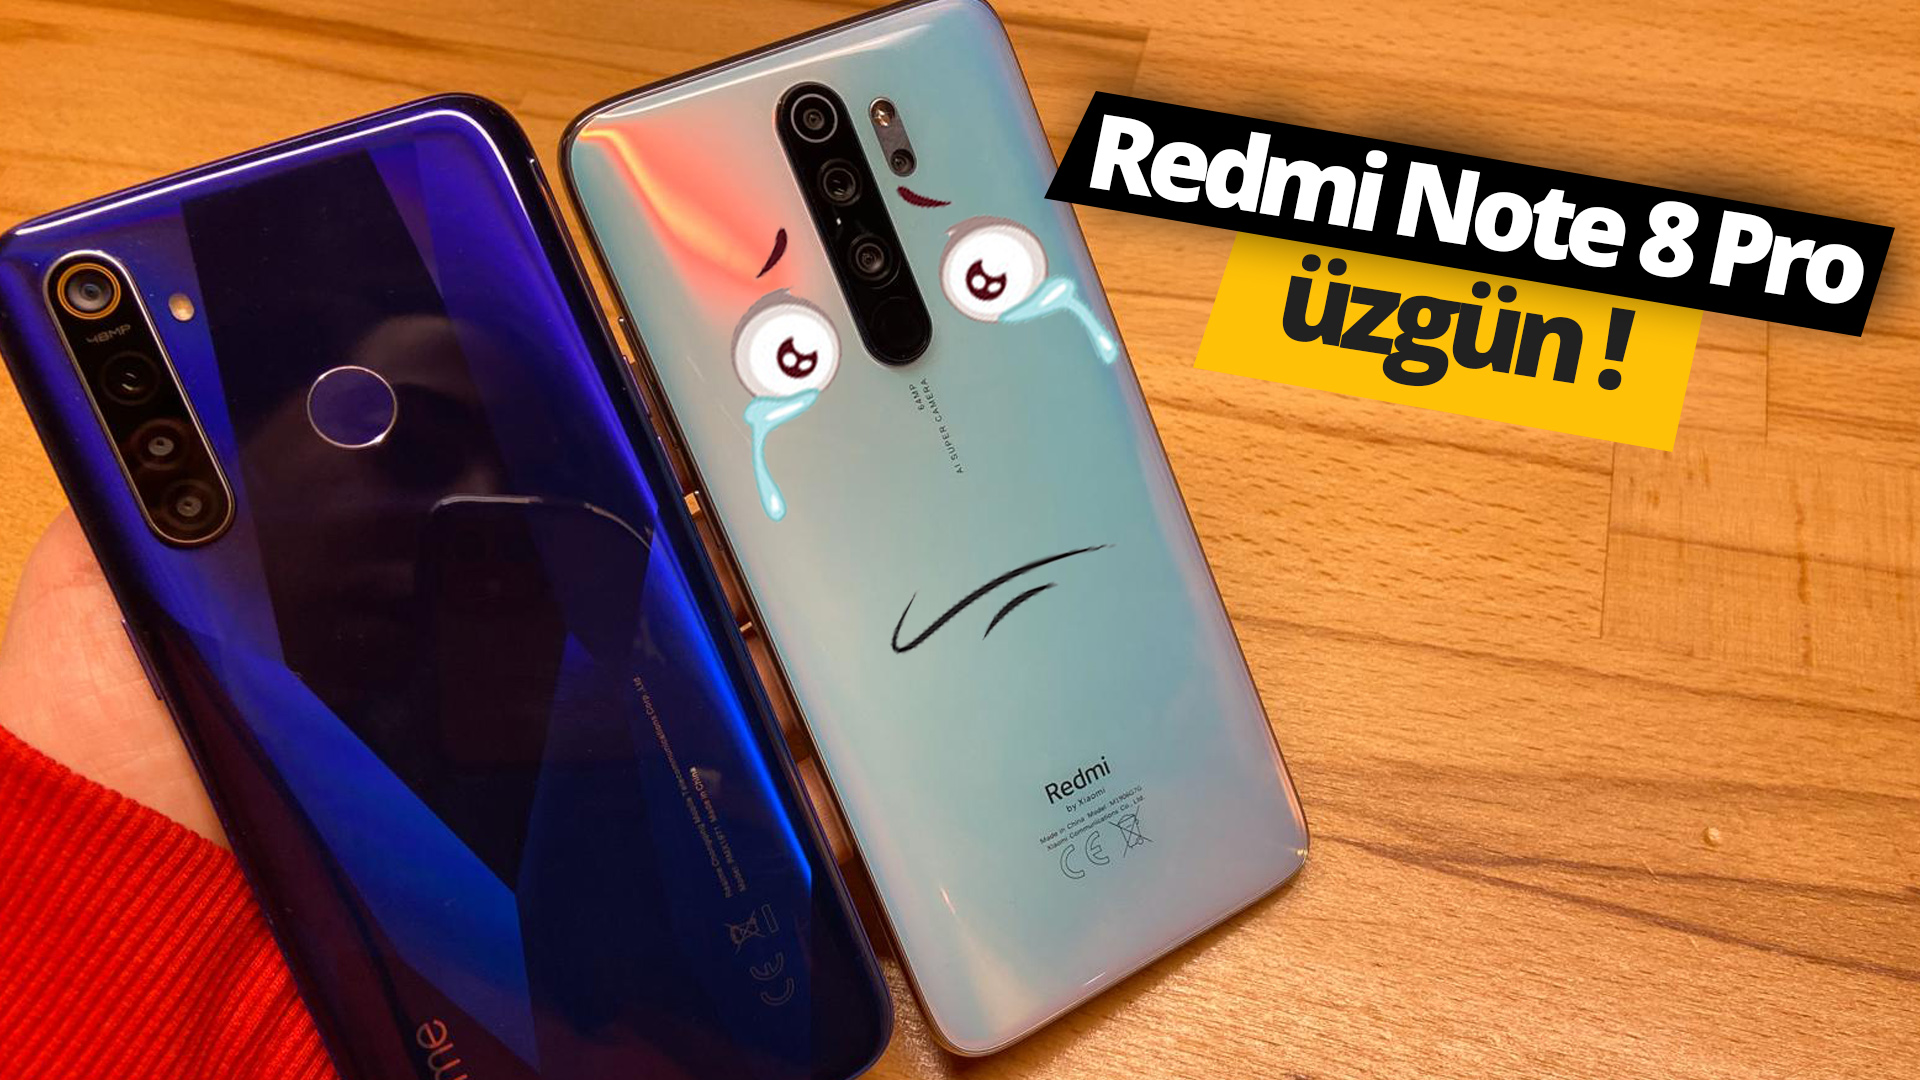 Redmi Note 8 Pro üzgün! Redmi Note 8 Pro vs realme 5 Pro